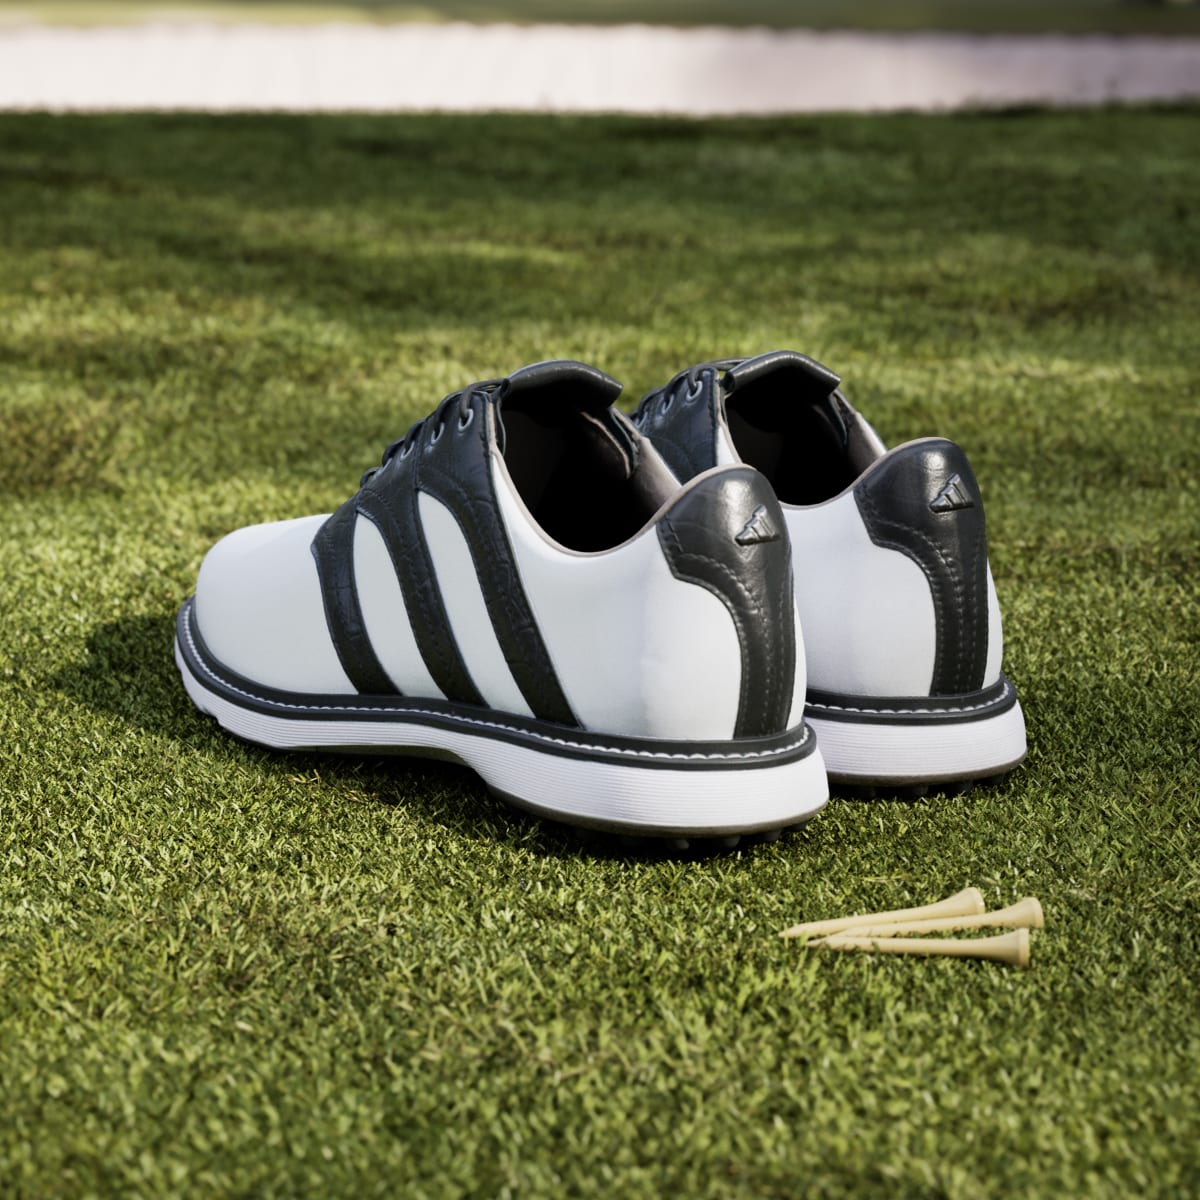 Adidas MC Z-Traxion Spikeless Golfschuh. 5